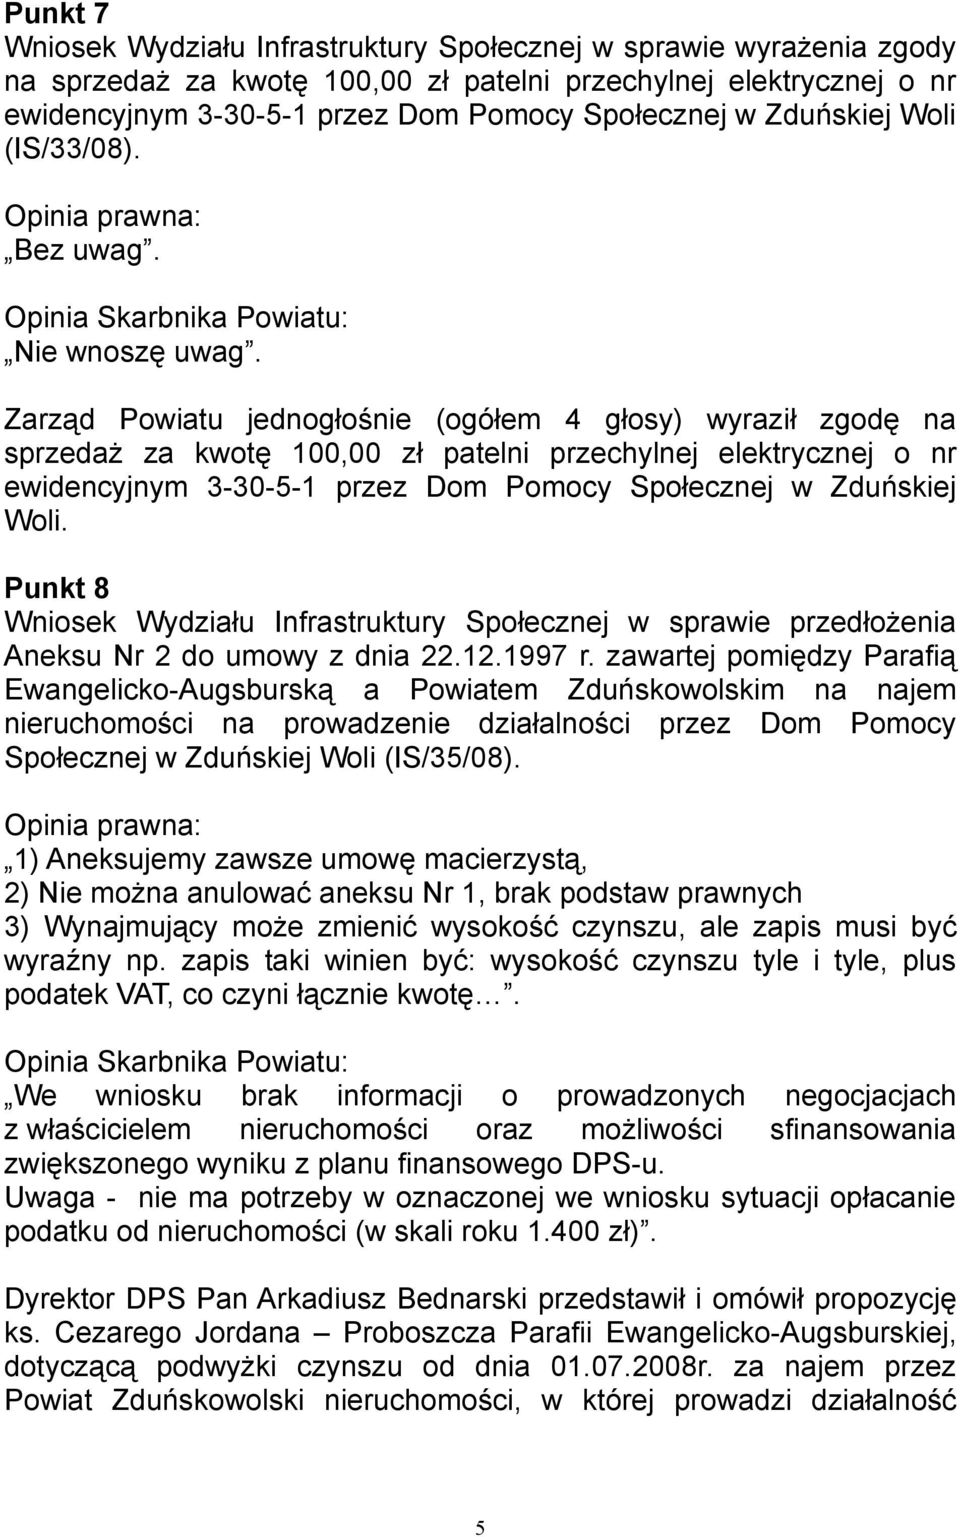 Zarząd Powiatu jednogłośnie (ogółem 4 głosy) wyraził zgodę na sprzedaż za kwotę 100,00 zł patelni przechylnej elektrycznej o nr ewidencyjnym 3-30-5-1 przez Dom Pomocy Społecznej w Zduńskiej Woli.